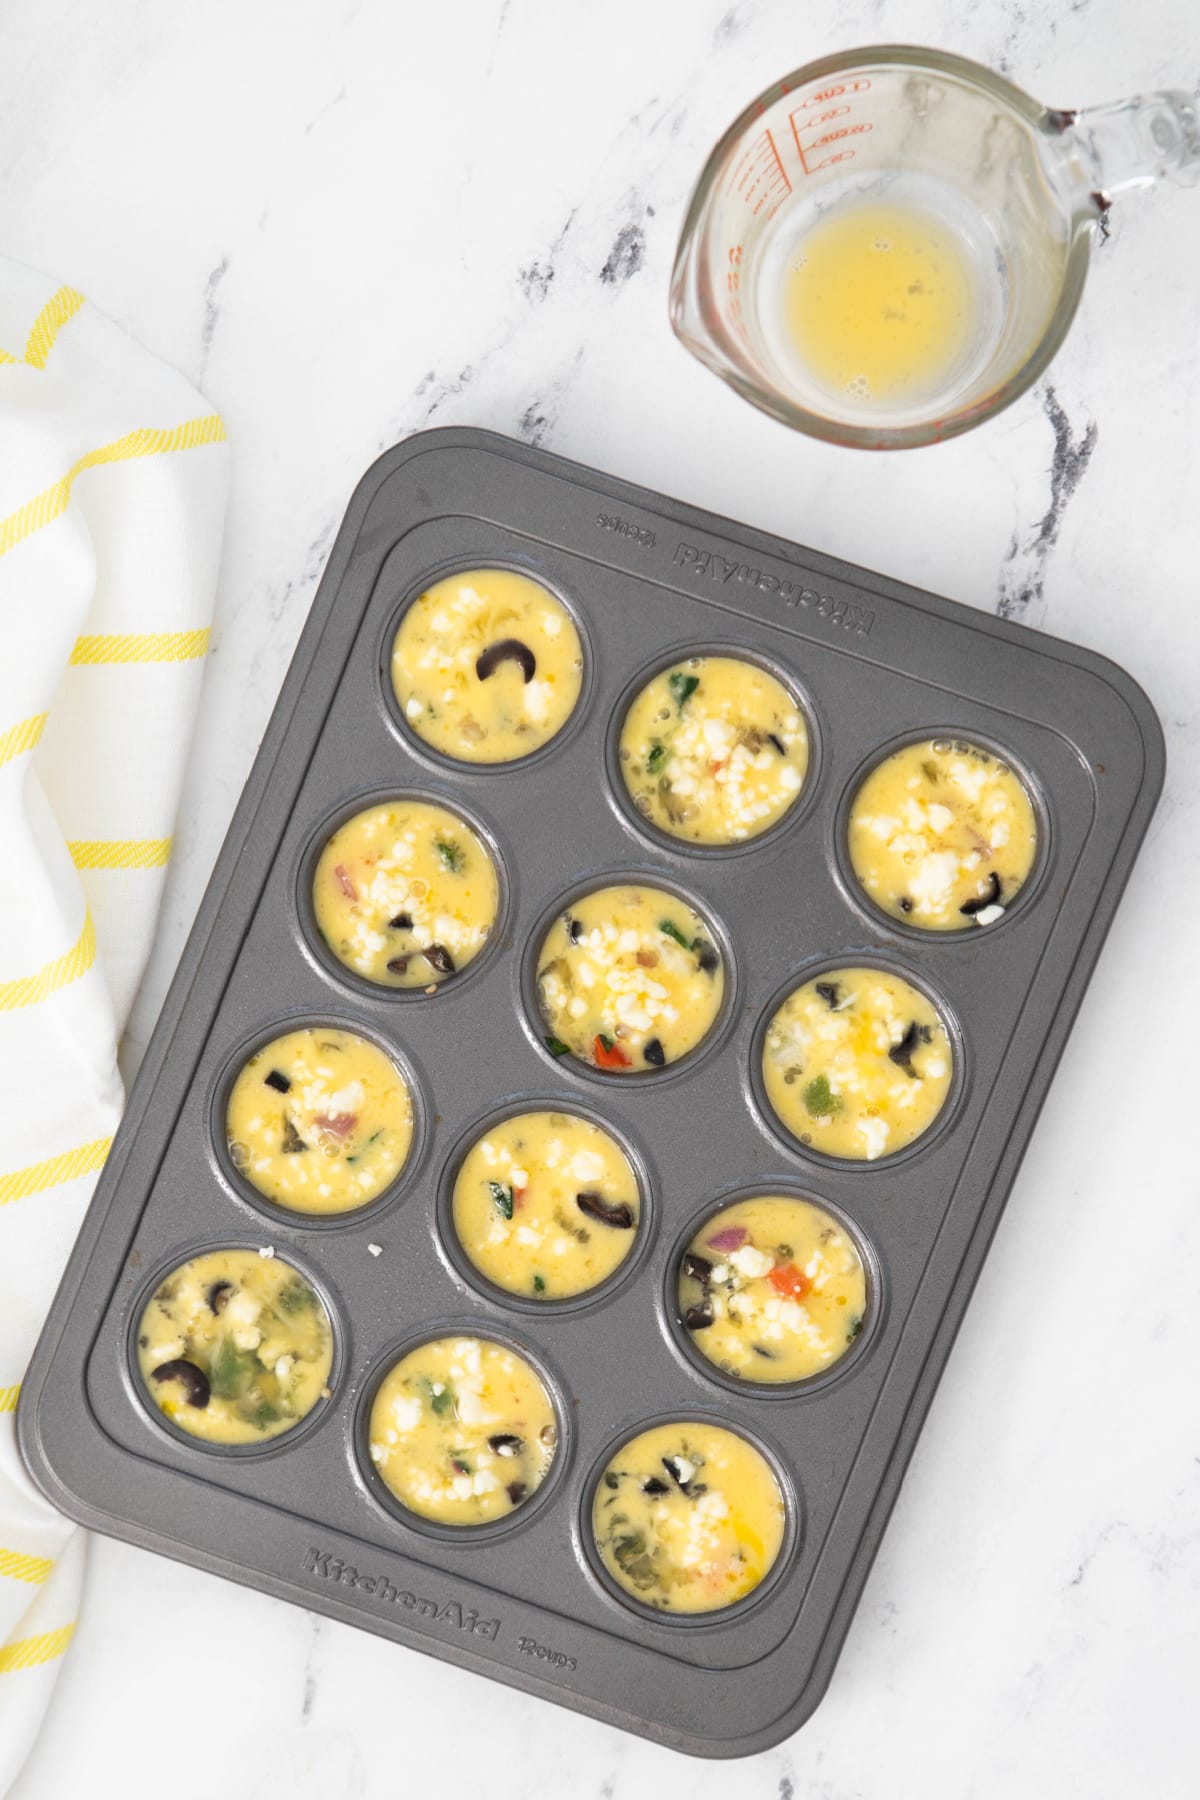 Eggs added to veggies in mini muffin pan